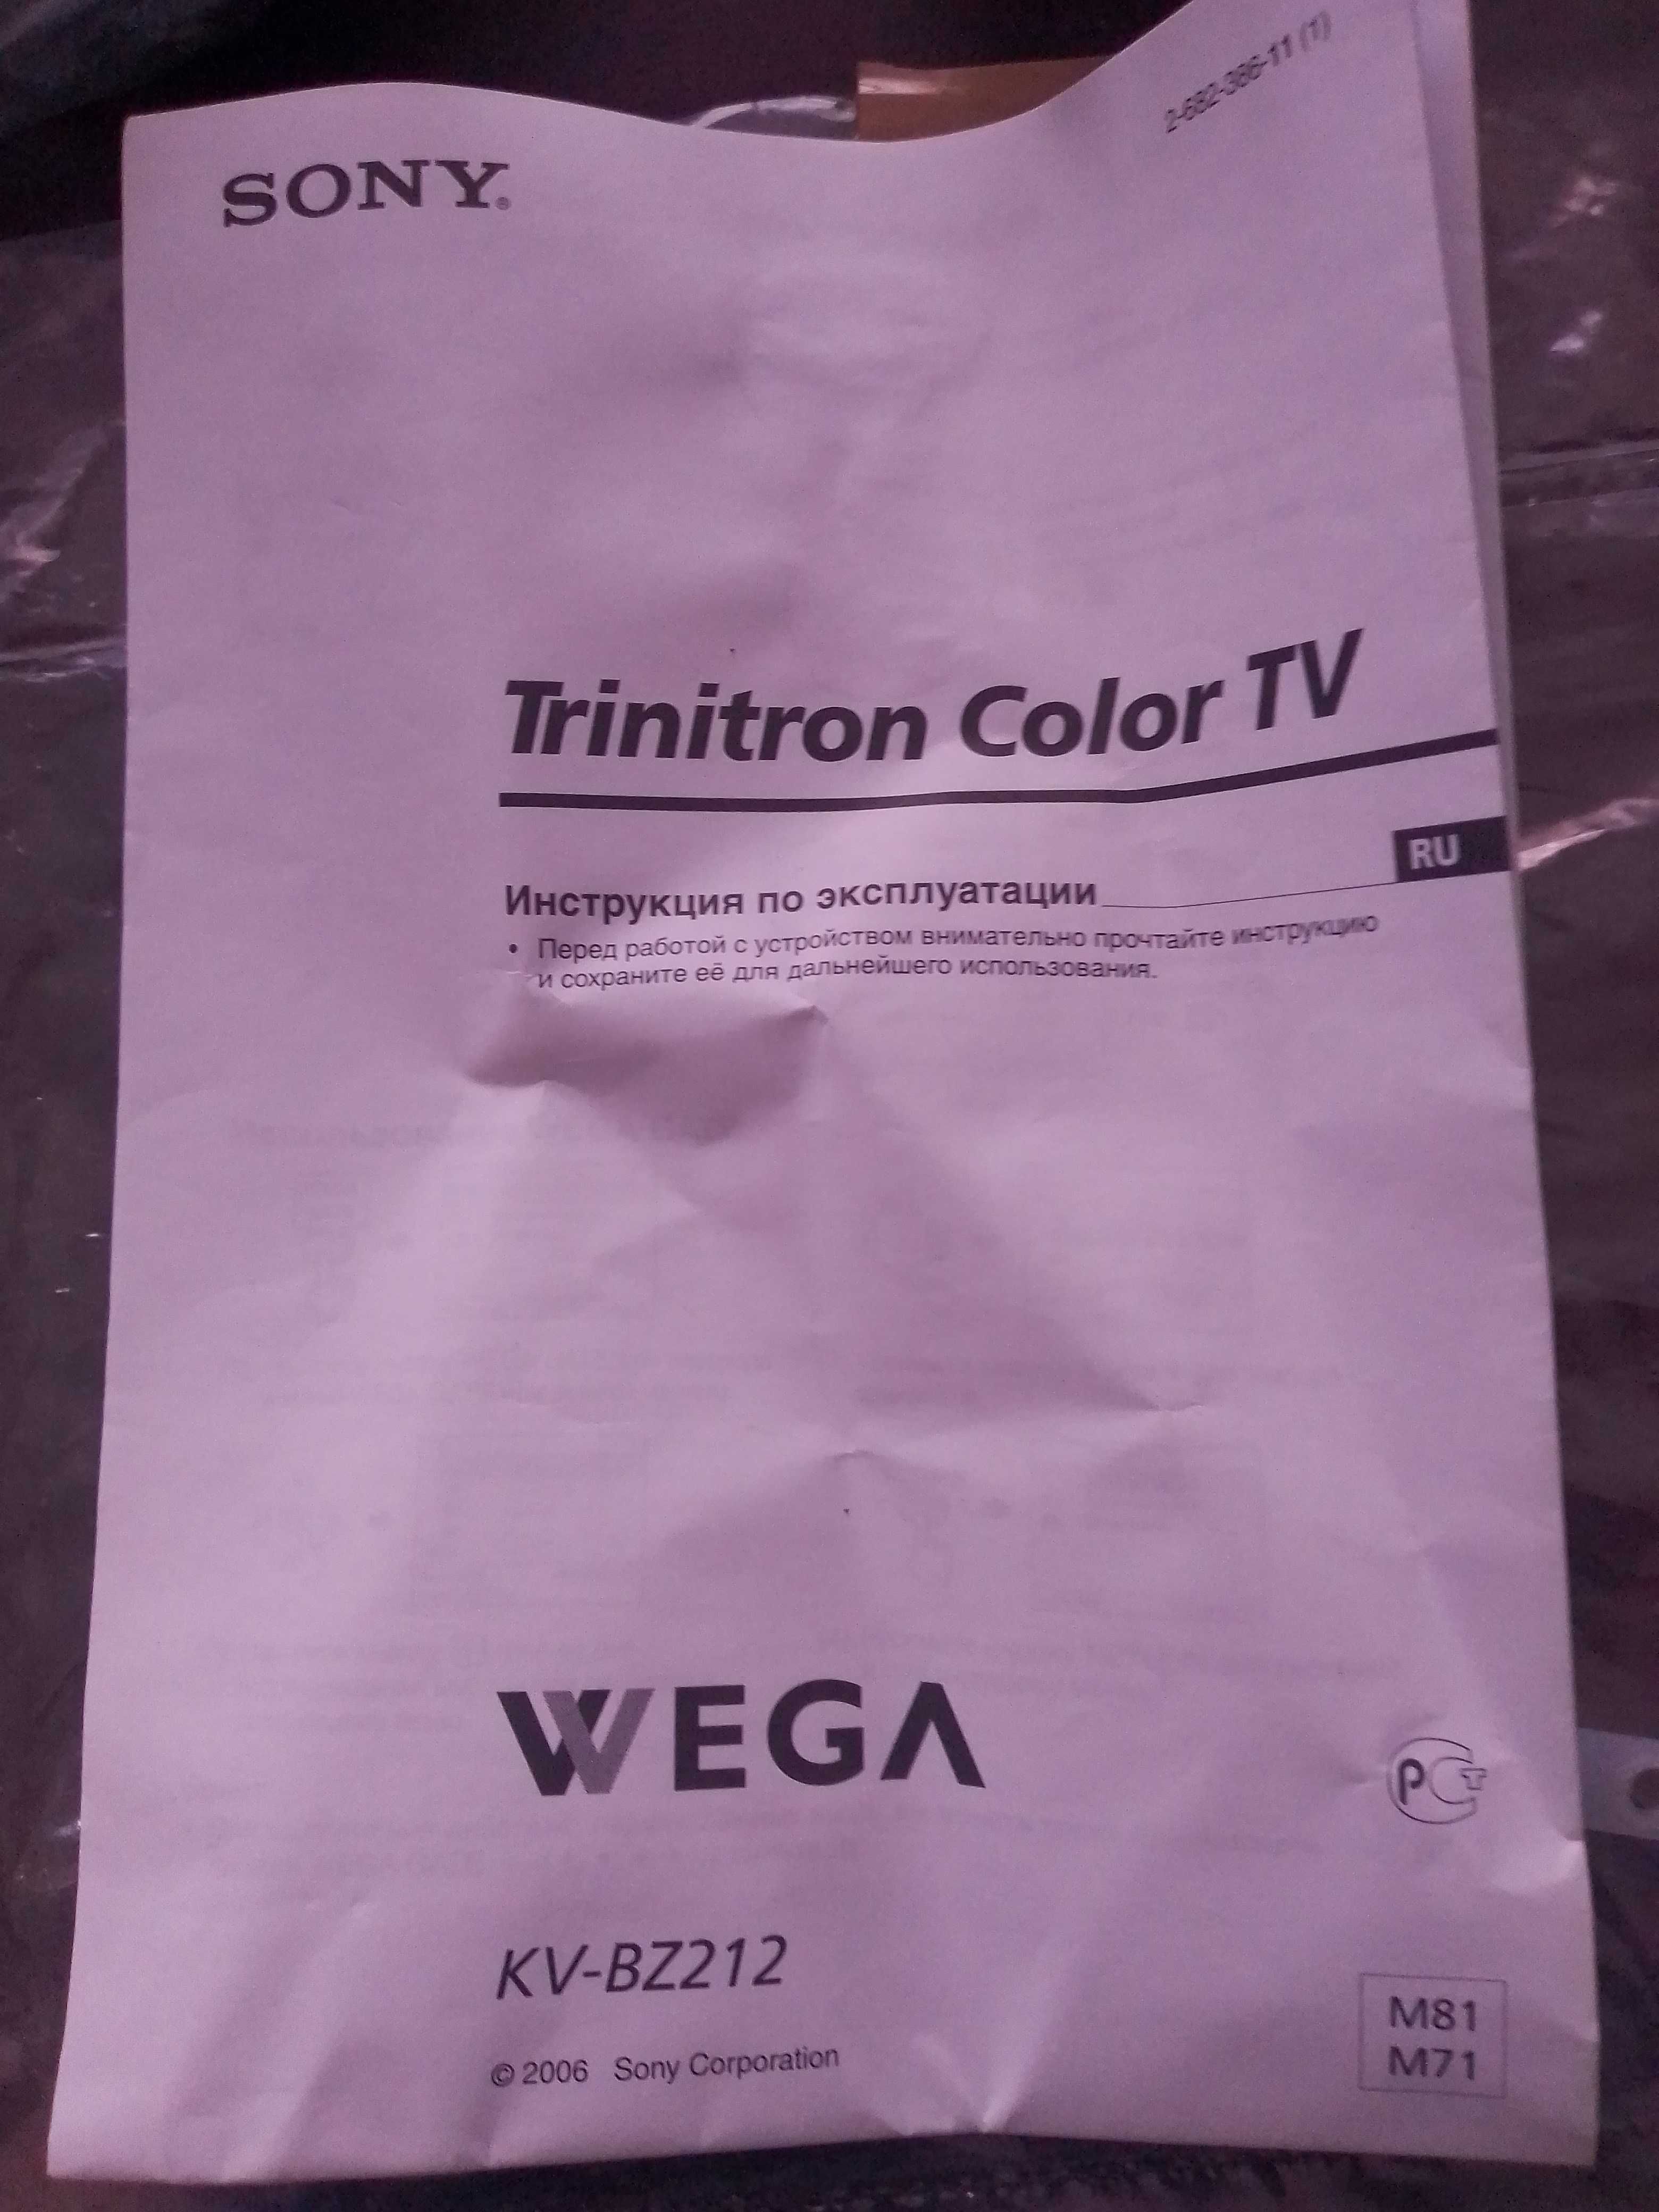 Телевизор SONY, WEGA KV-212, Trinitron Color TV.